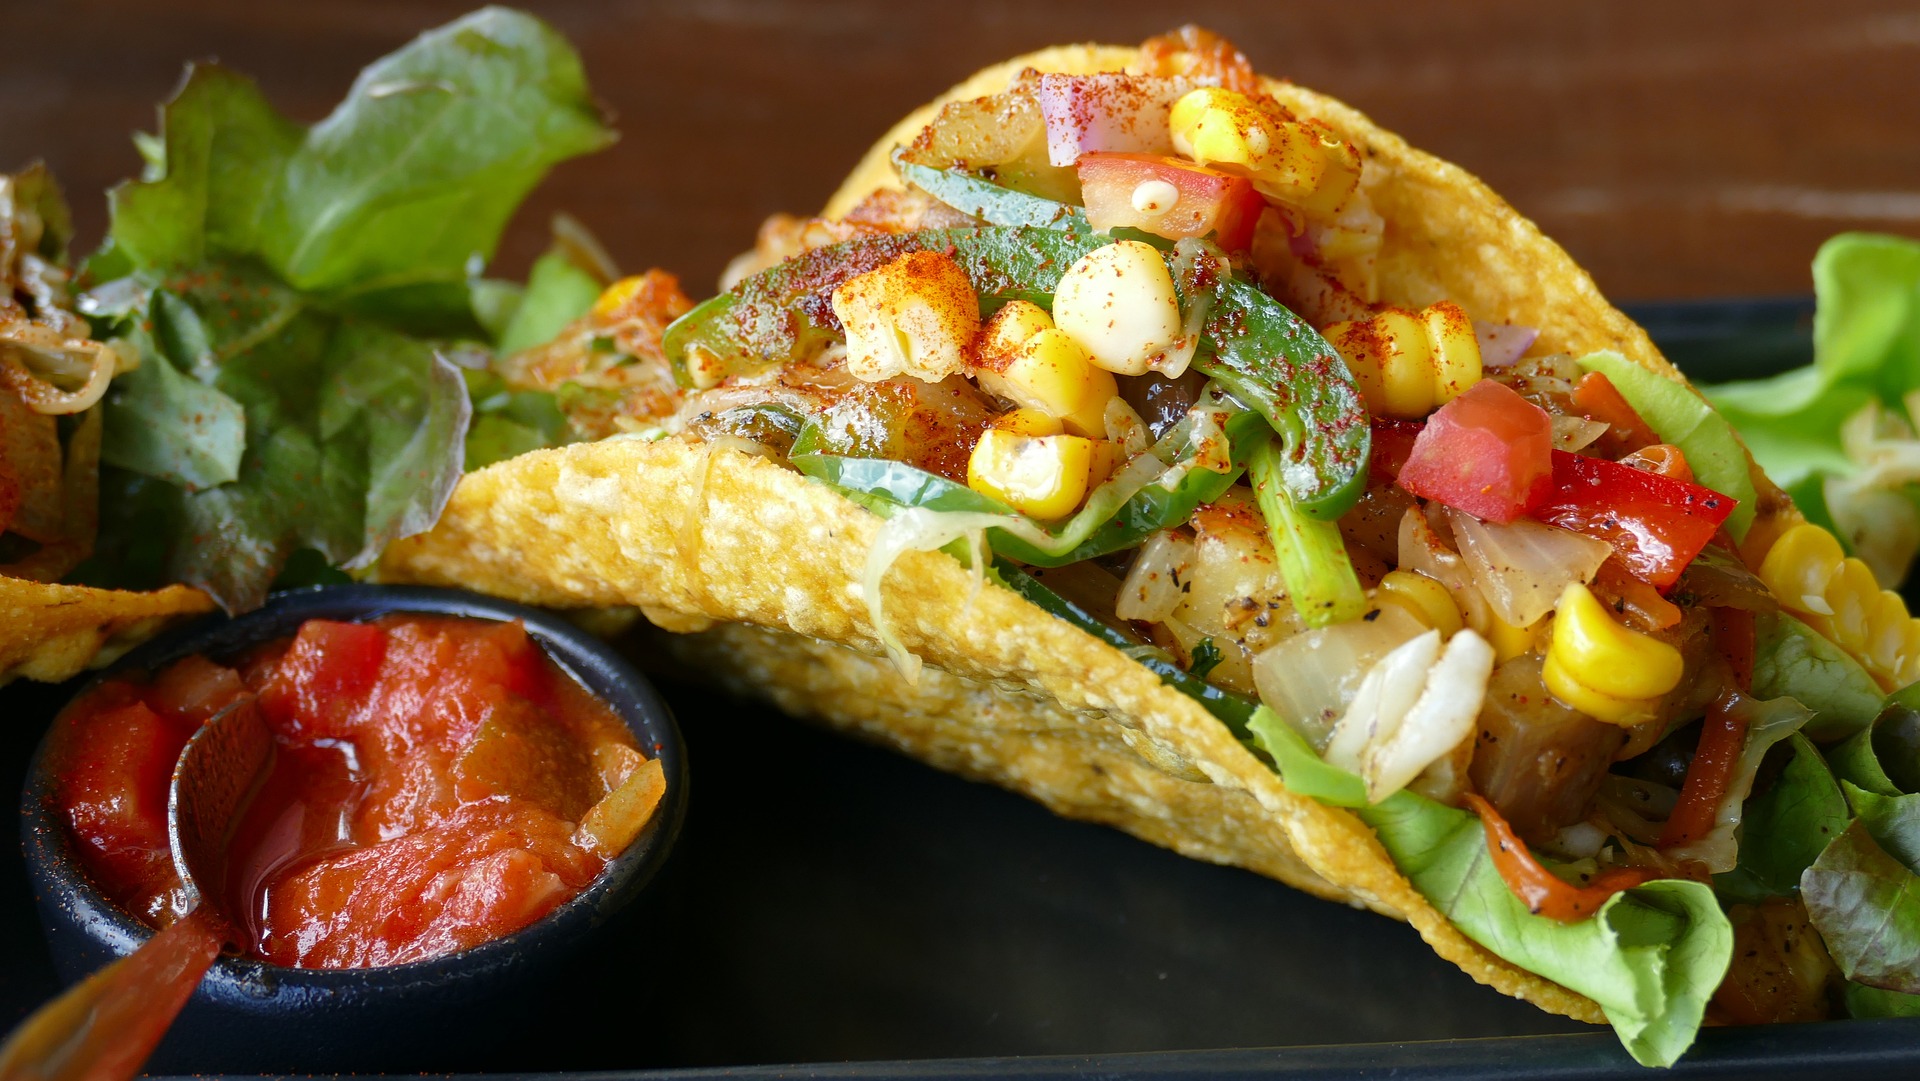 Le tacos, une tendance qui s’affirme en restauration rapide